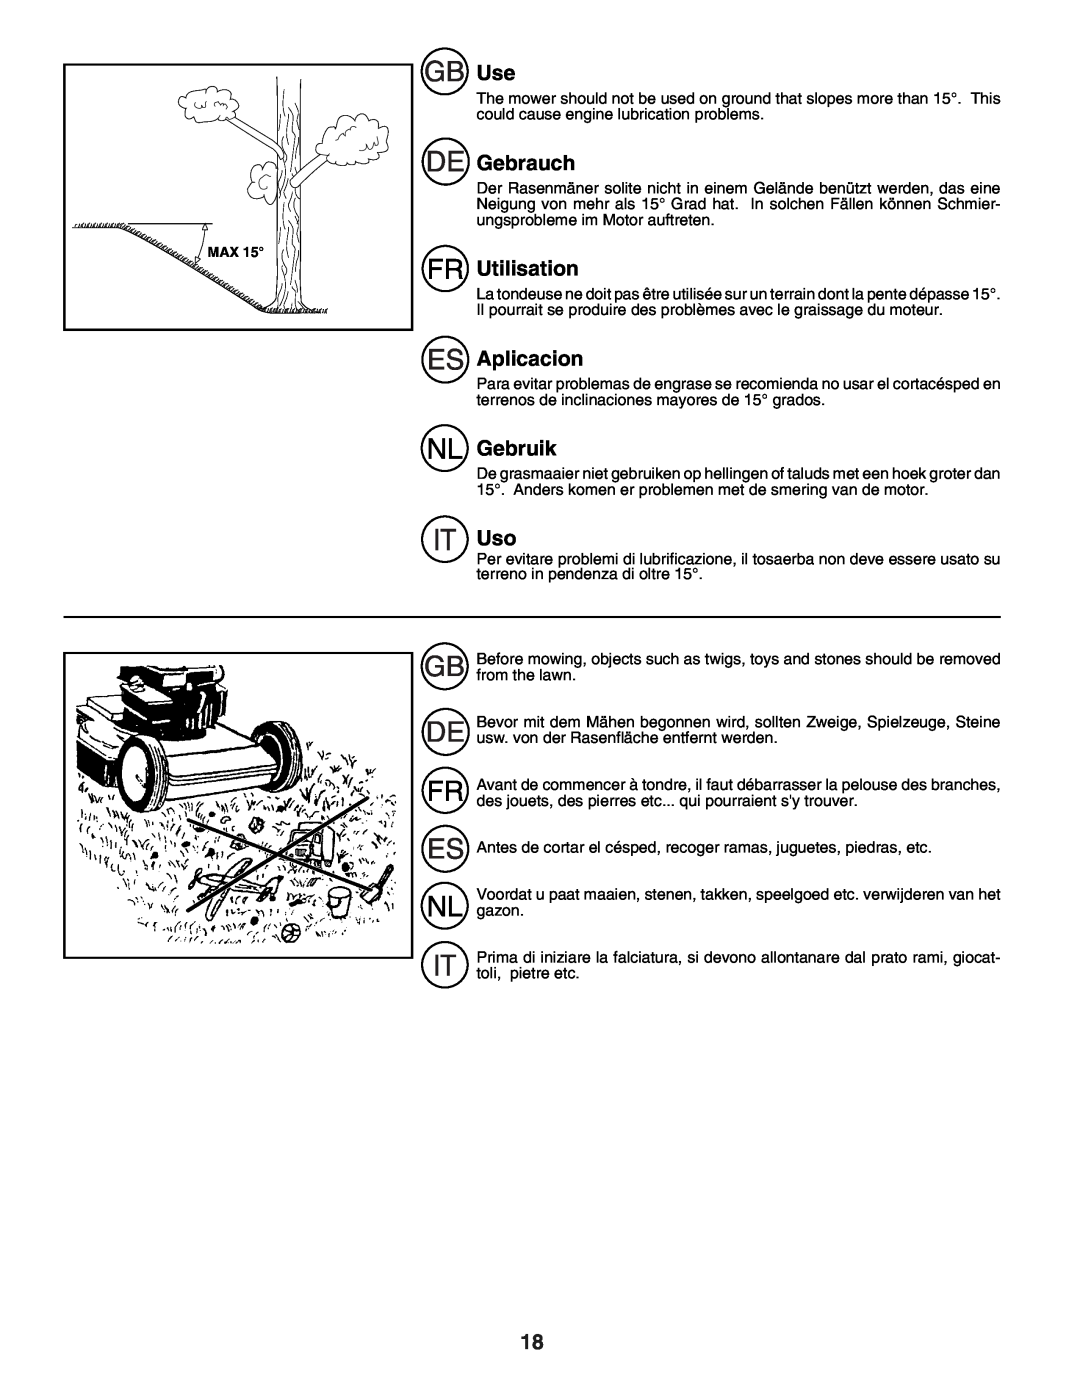 Husqvarna R152SVB instruction manual Gebrauch, Utilisation, Aplicacion, Gebruik 